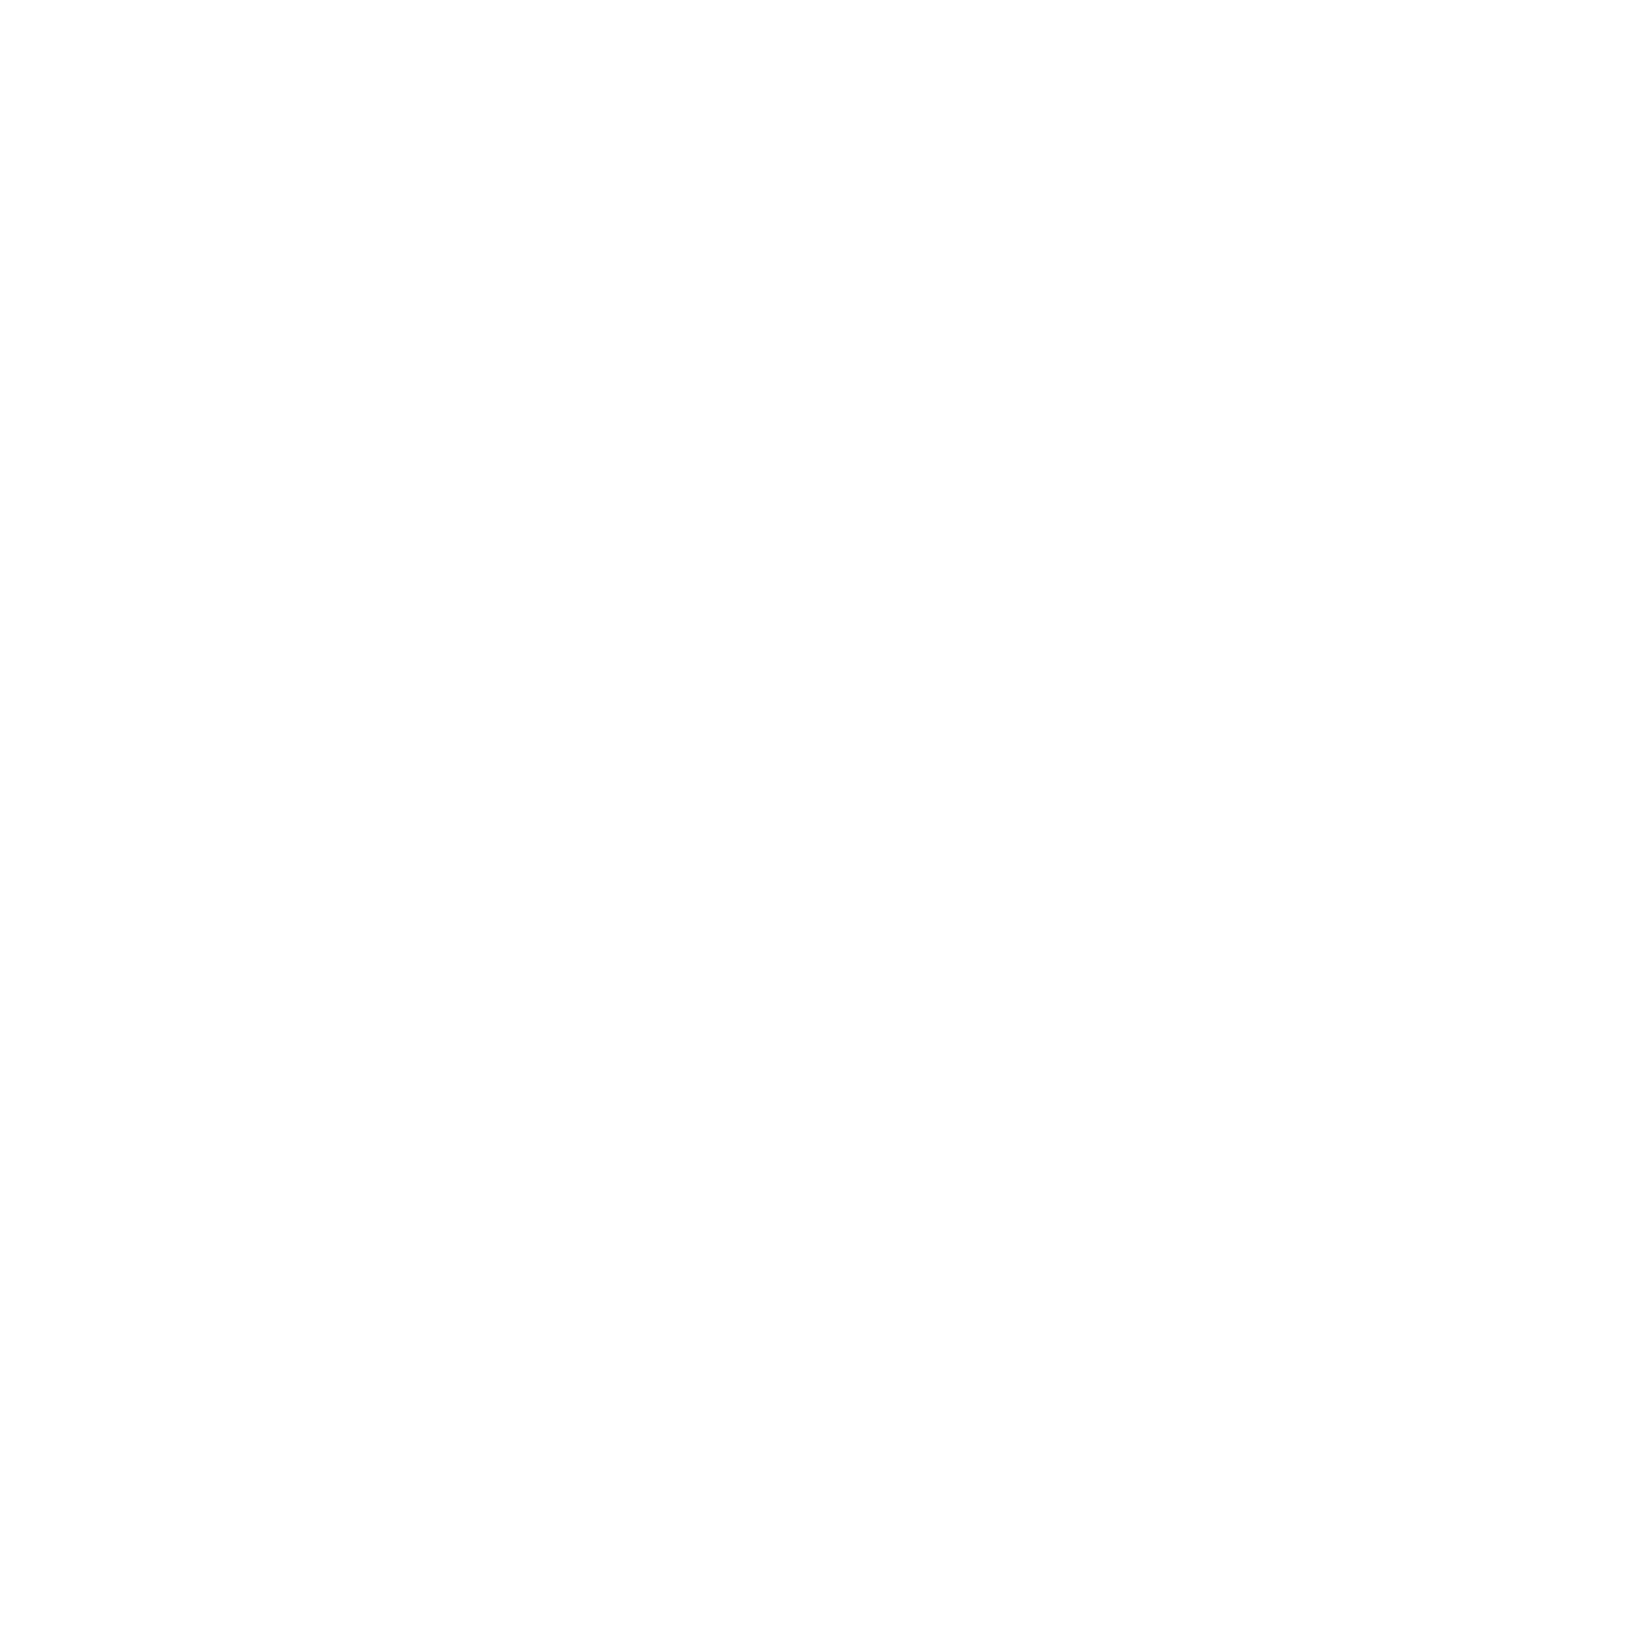 Mary Lin Yoshimura